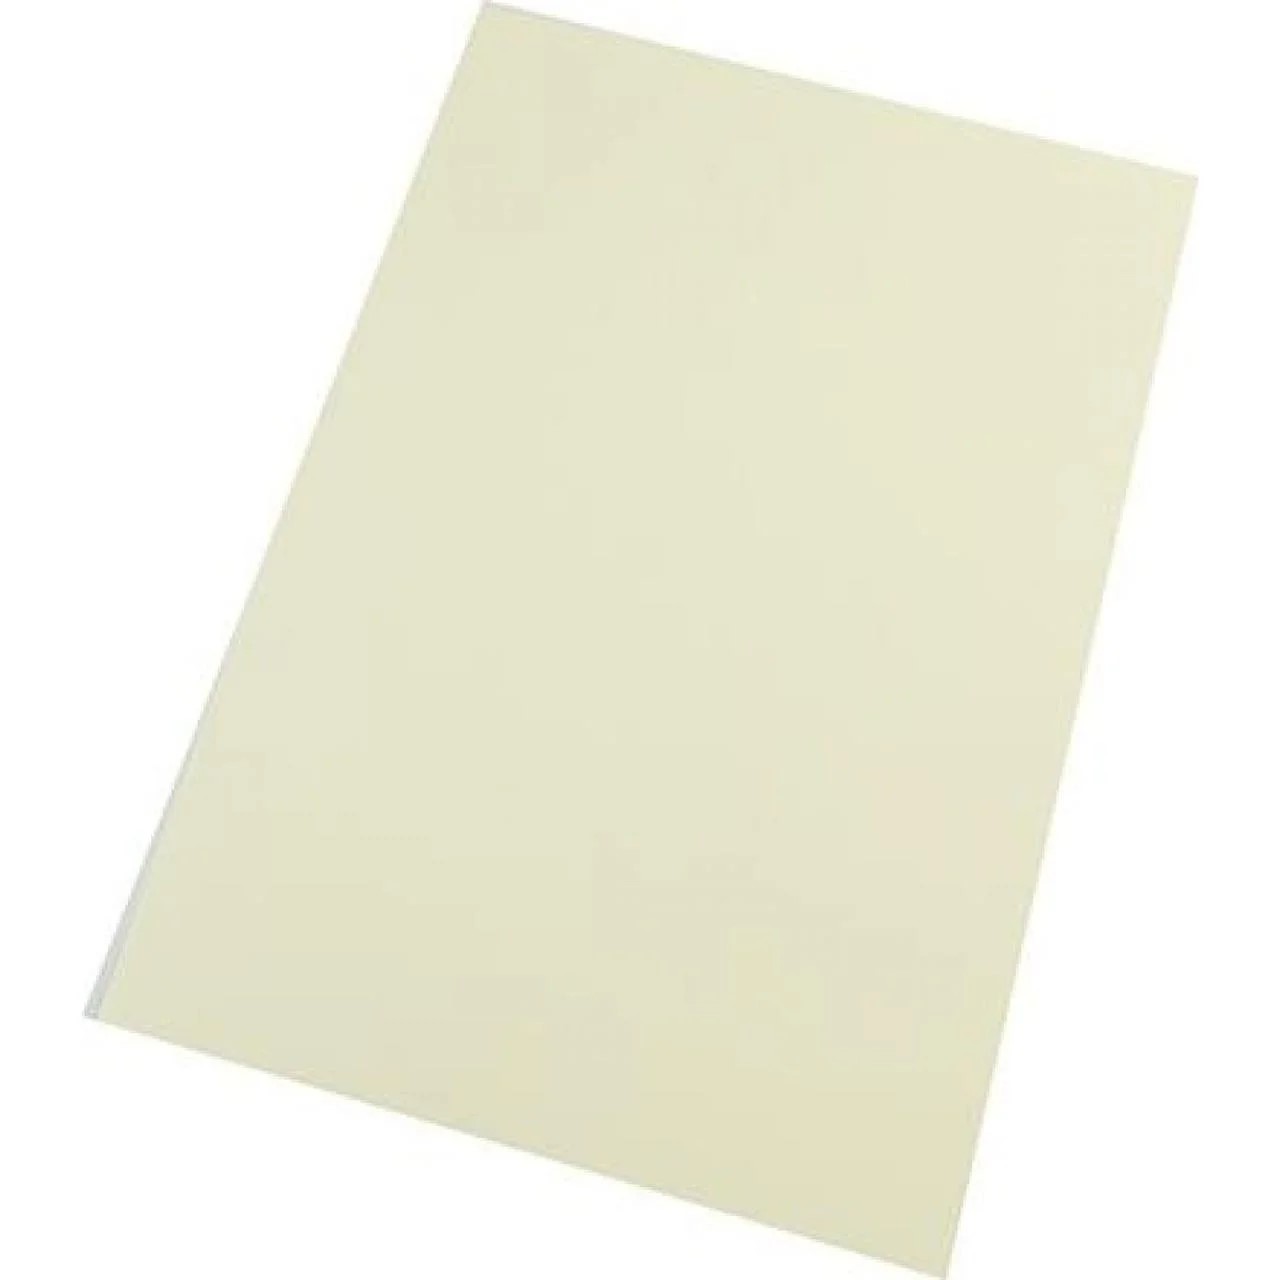 Бумага для пастели Tiziano A4 (21 * 29,7см), №02 crema, 160г / м2, кремовый, среднее зерно, Fabriano